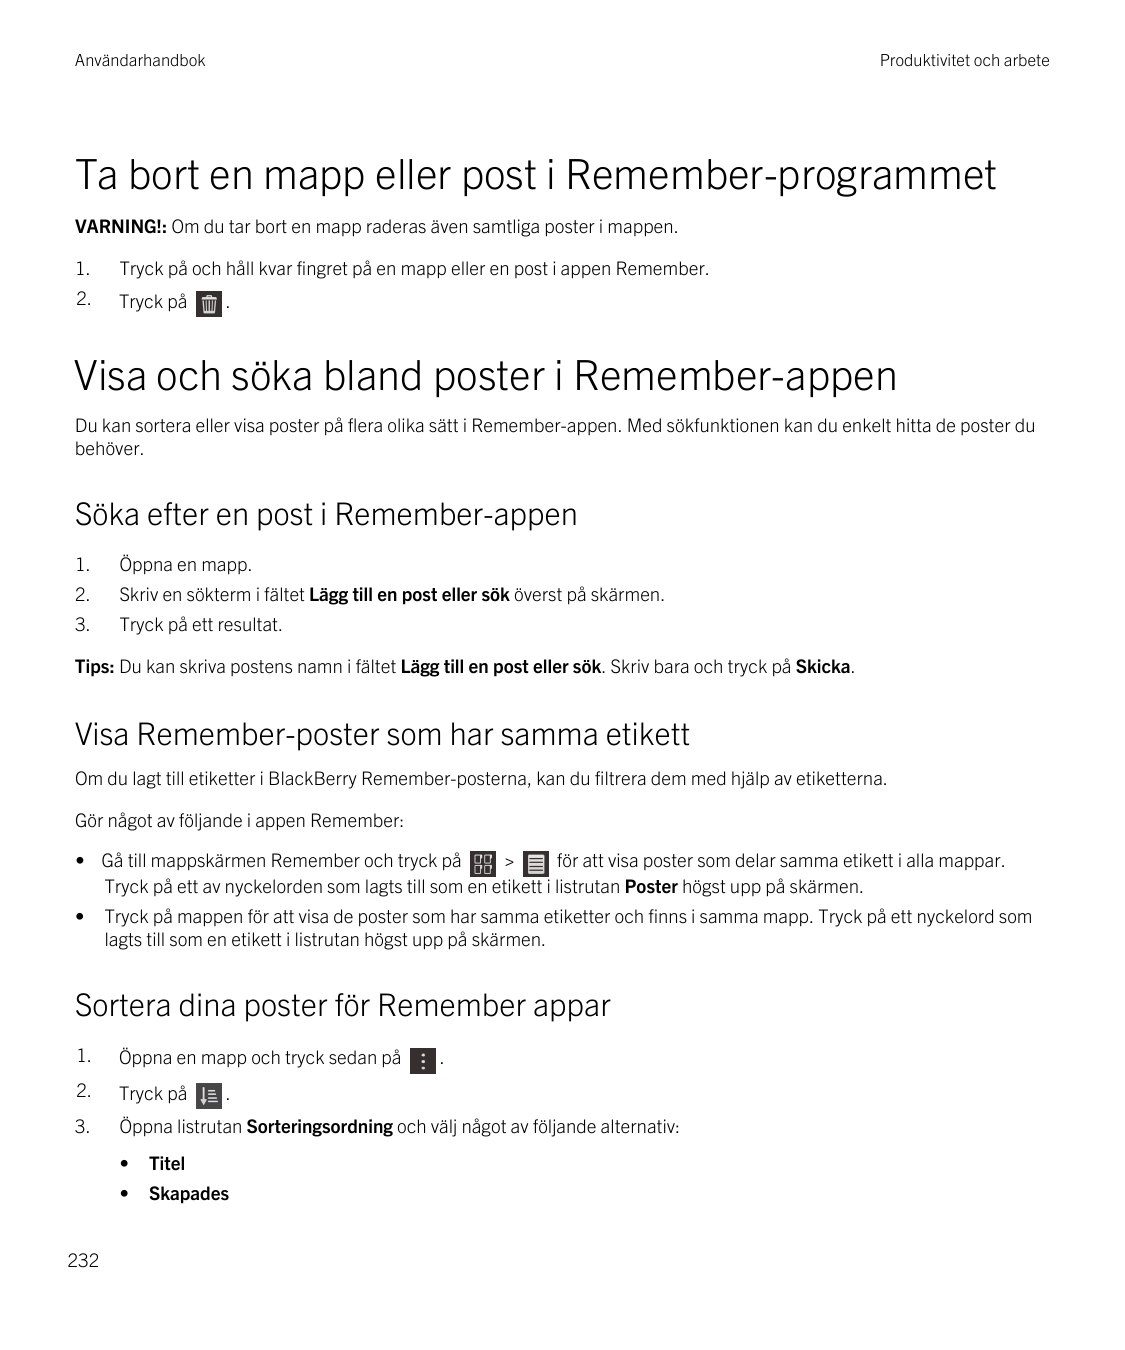 AnvändarhandbokProduktivitet och arbeteTa bort en mapp eller post i Remember-programmetVARNING!: Om du tar bort en mapp raderas 